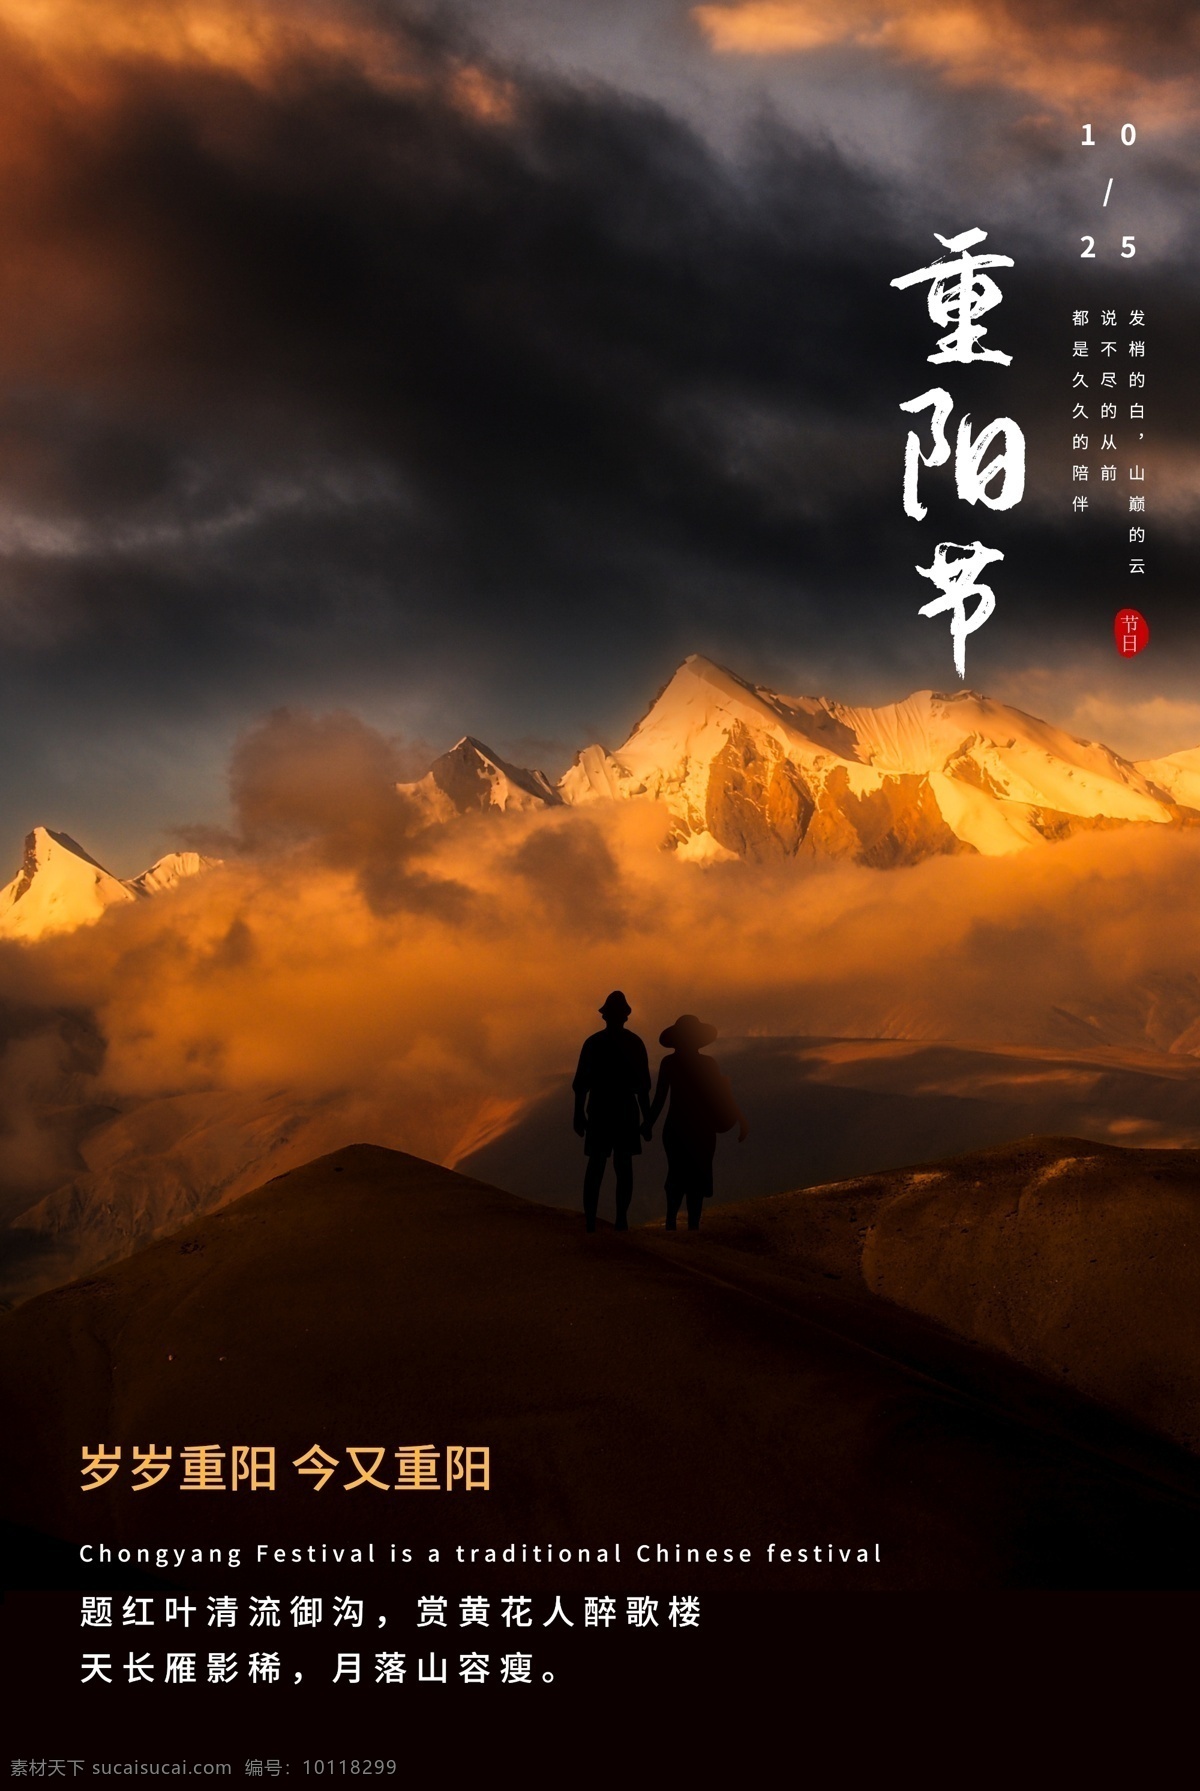 重阳 传统节日 活动 宣传海报 素材图片 传统 节日 宣传 海报